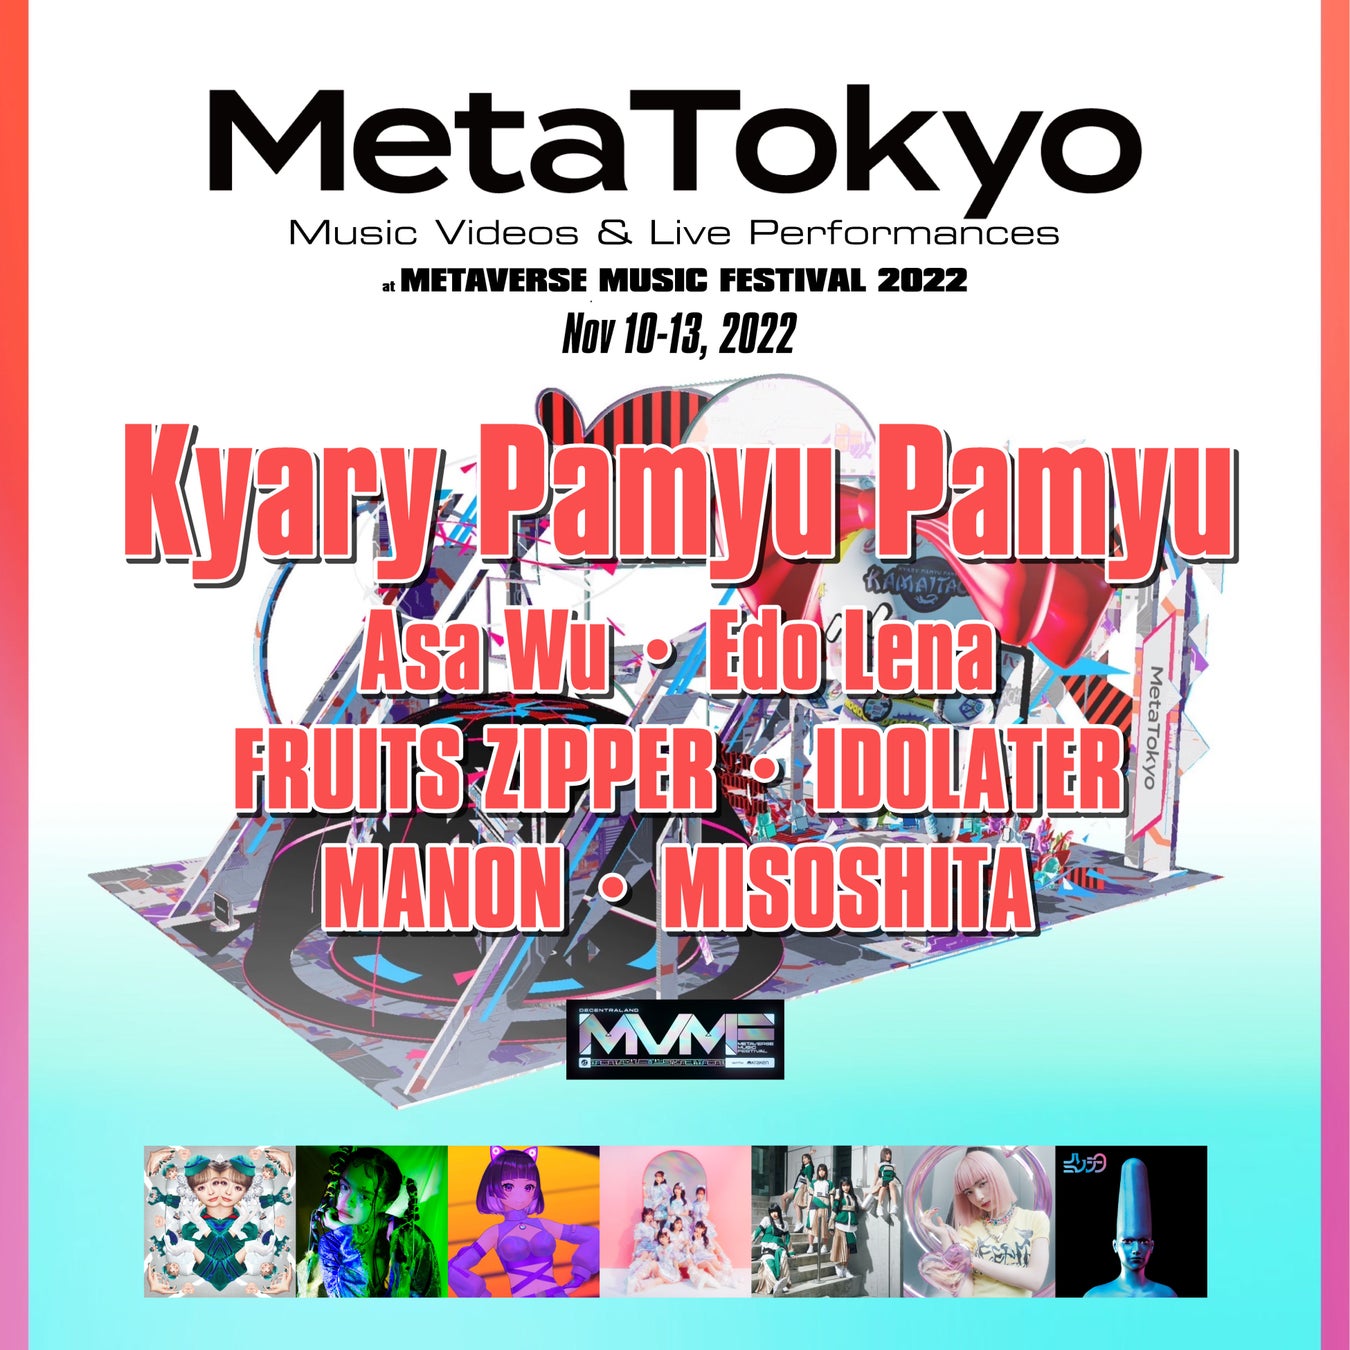 世界最大級のメタバース音楽フェスティバルに日本から多数のアーティストが出演！MetaTokyoステージもオープン